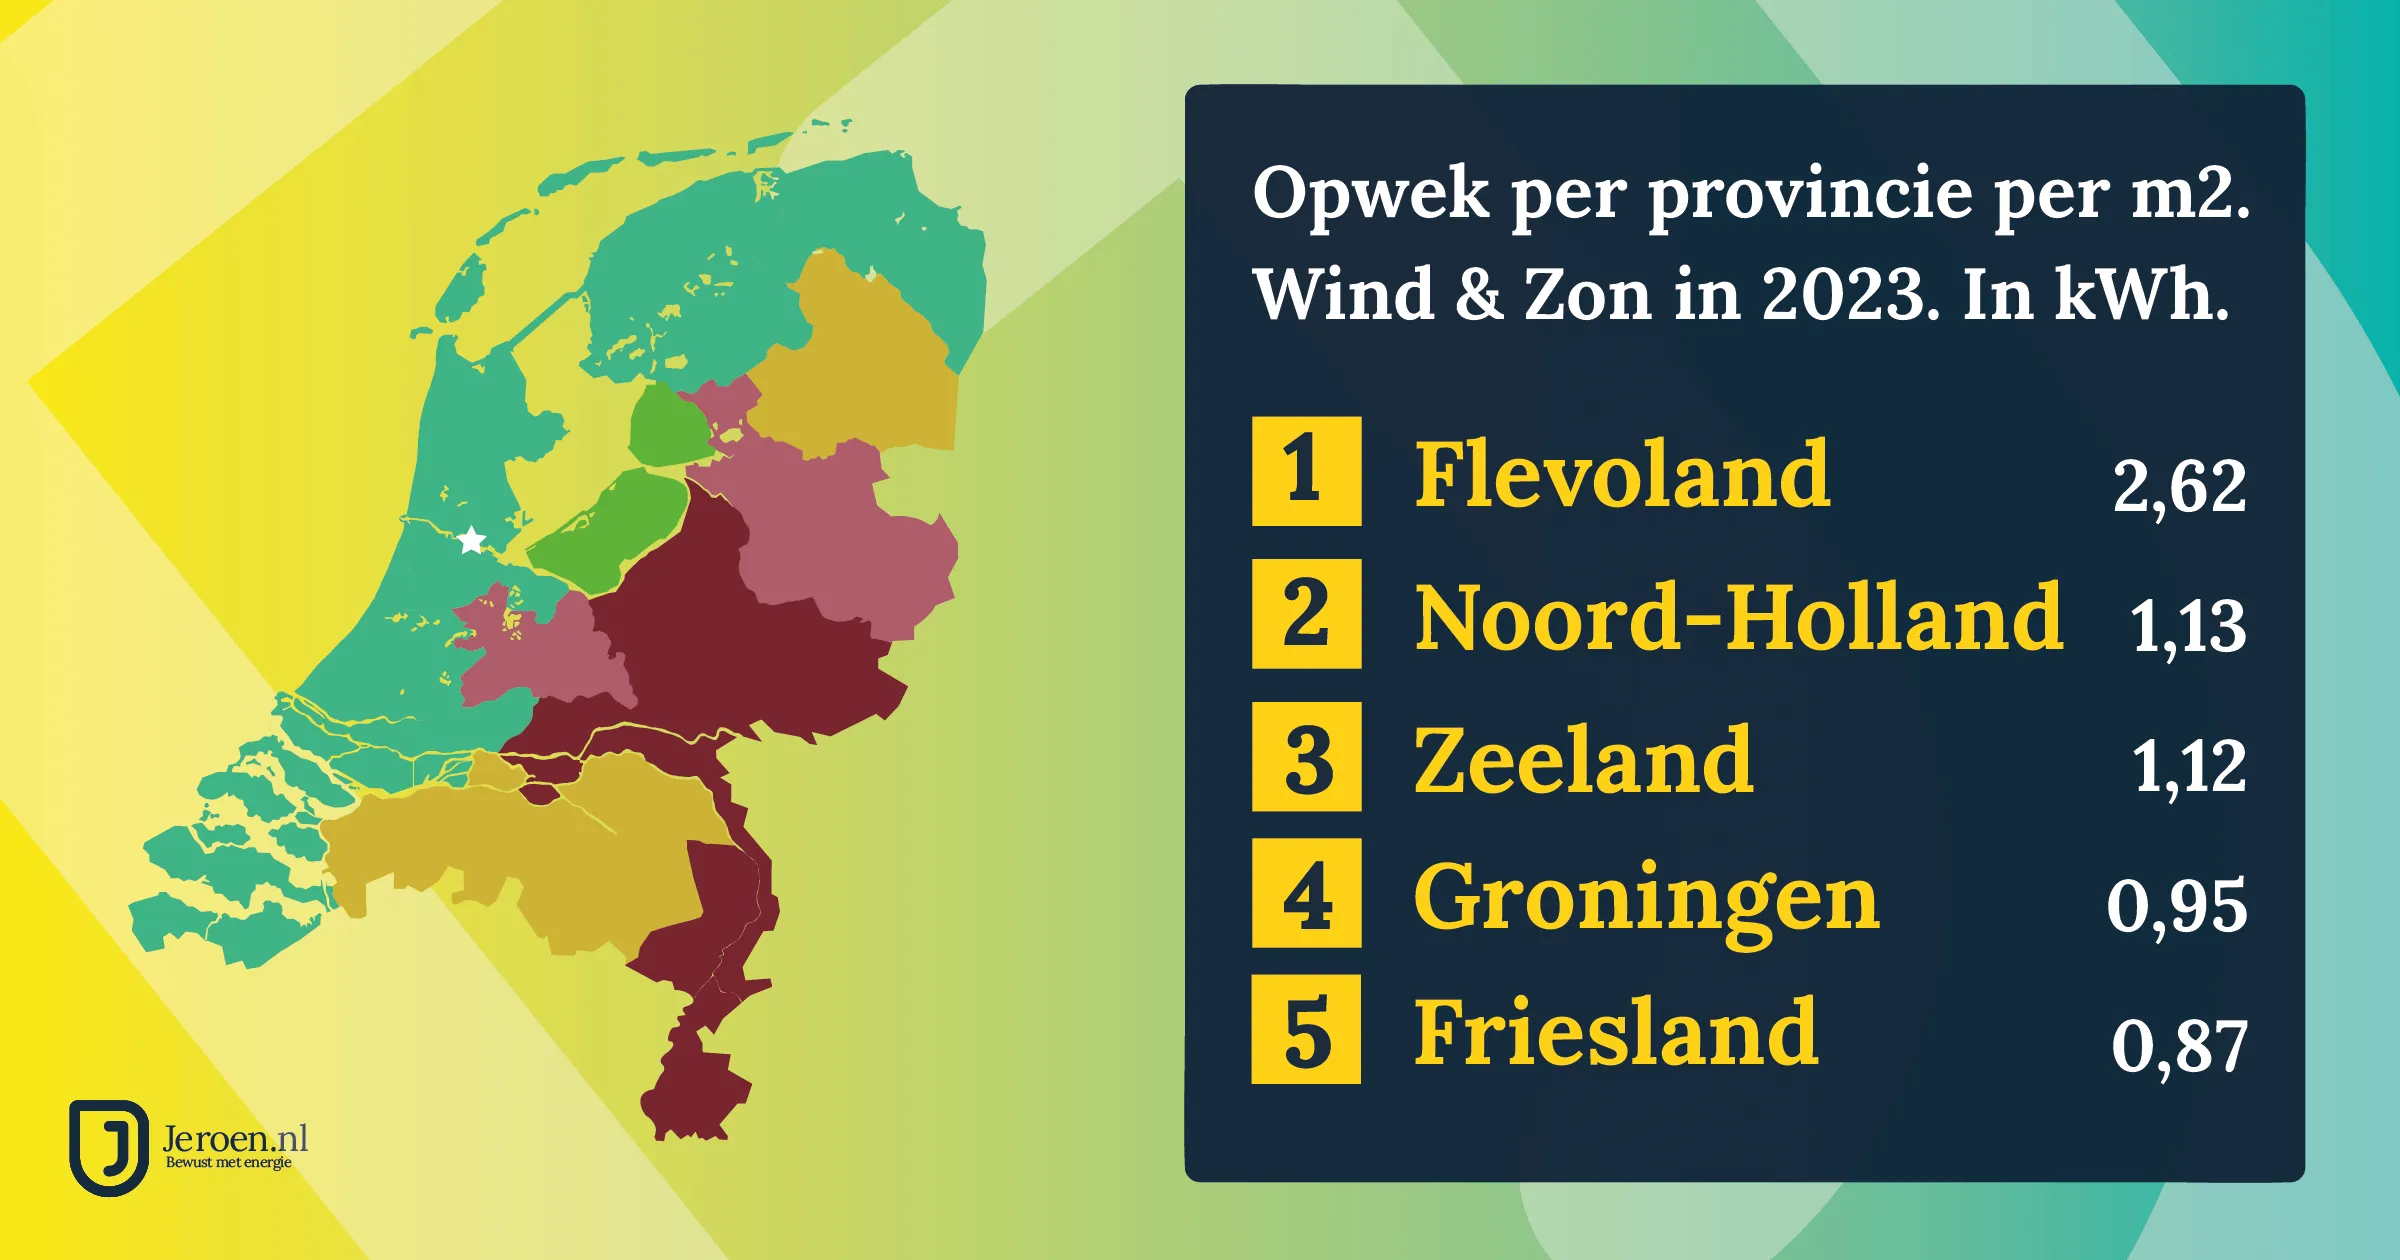 opwek zon wind 2023 per m2 per provincie 